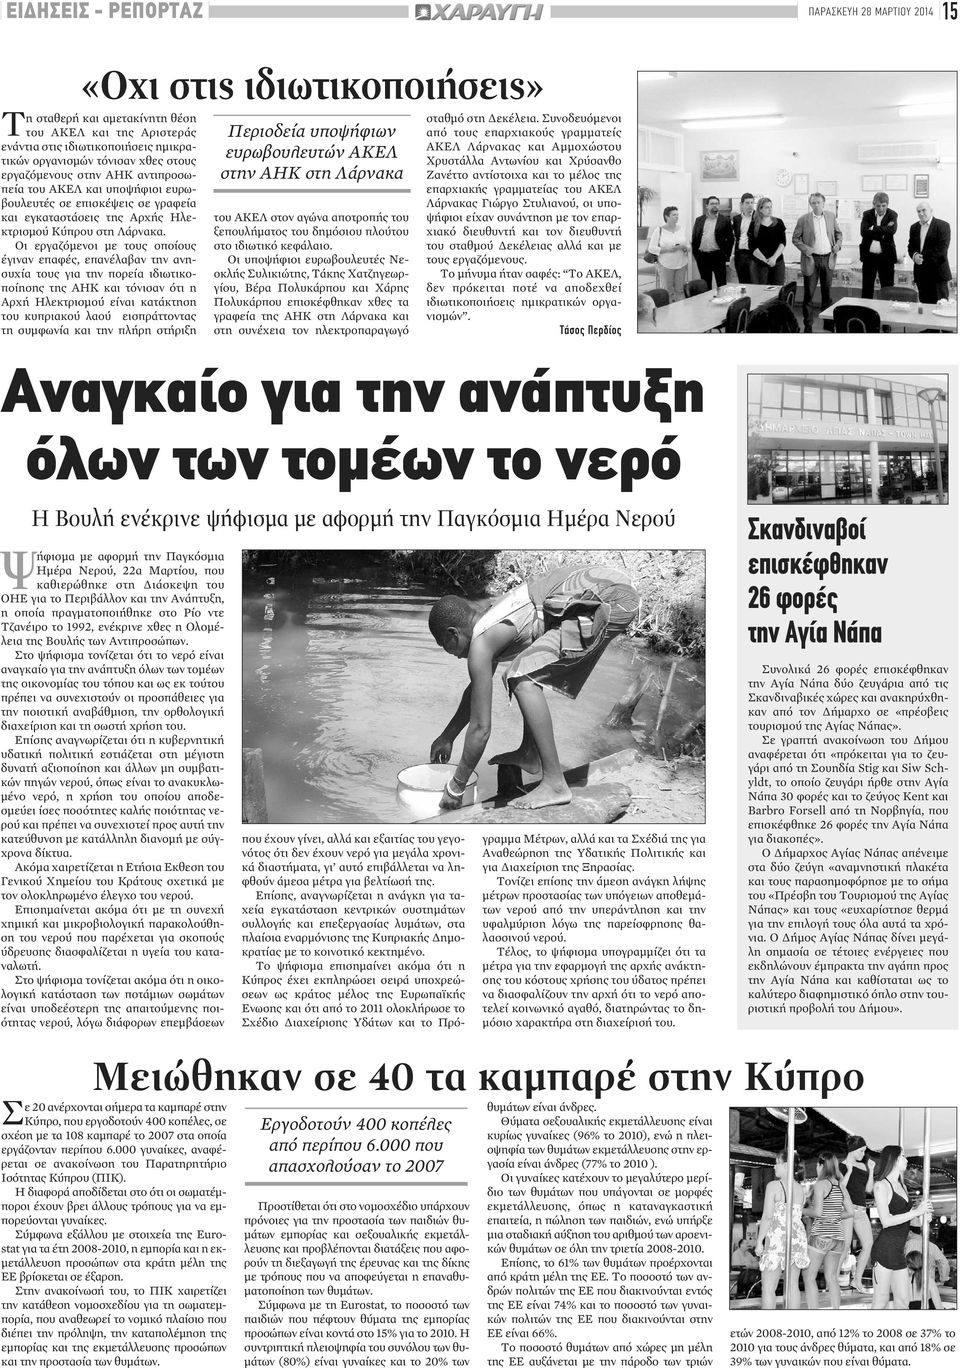 Οι εργαζόμενοι με τους οποίους έγιναν επαφές, επανέλαβαν την ανησυχία τους για την πορεία ιδιωτικοποίησης της ΑΗΚ και τόνισαν ότι η Αρχή Ηλεκτρισμού είναι κατάκτηση του κυπριακού λαού εισπράττοντας